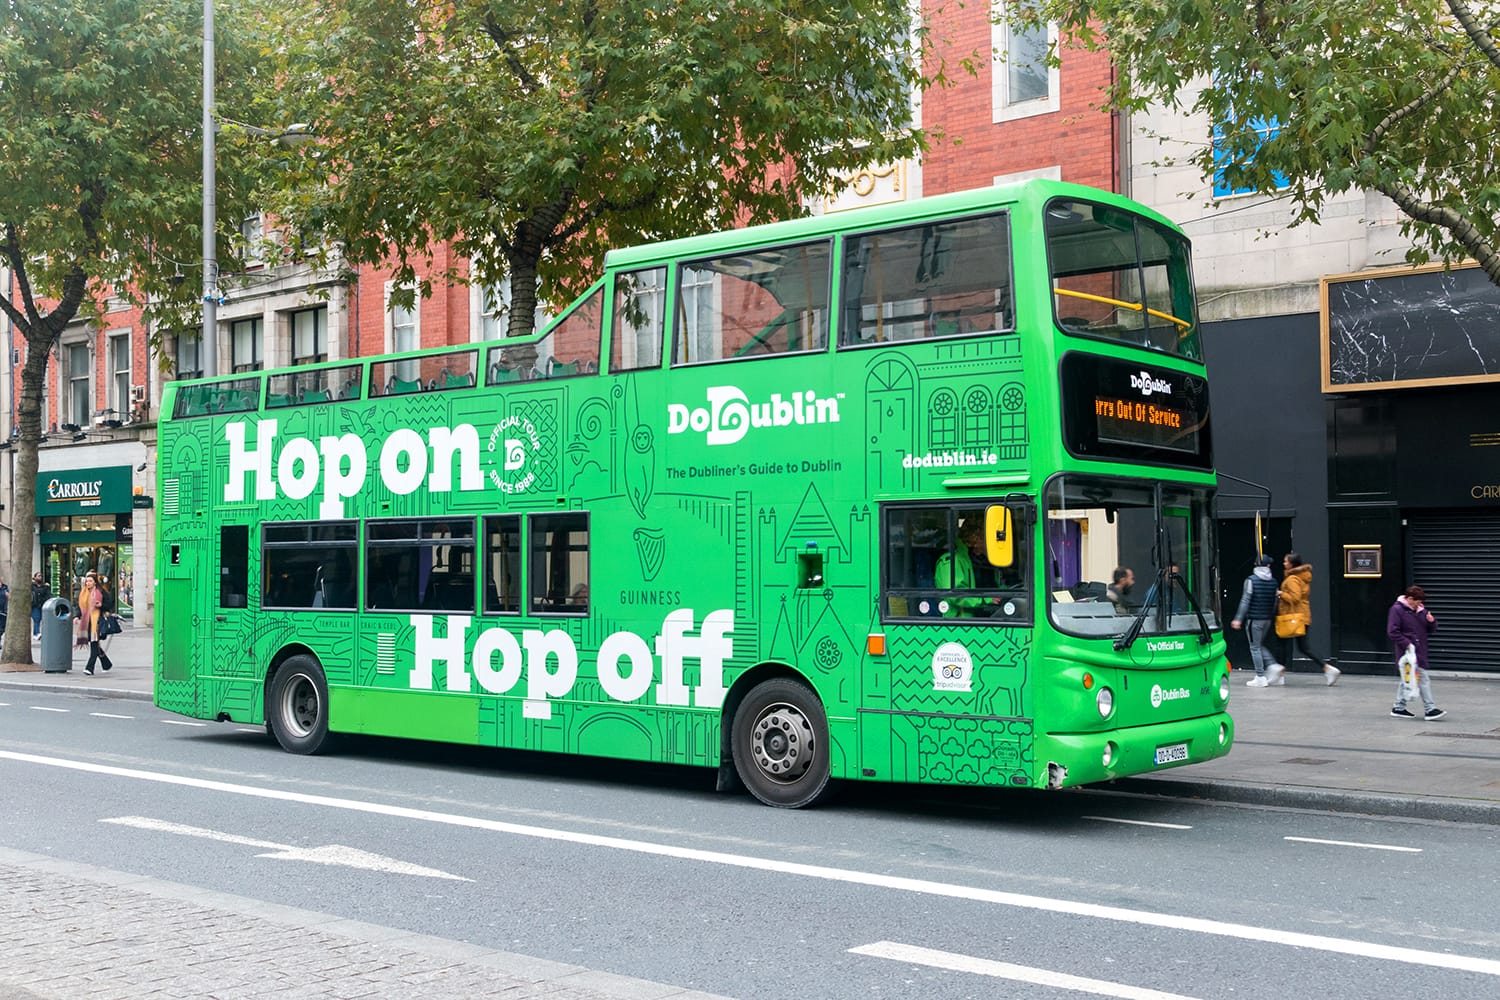 bus tour companies in dublin